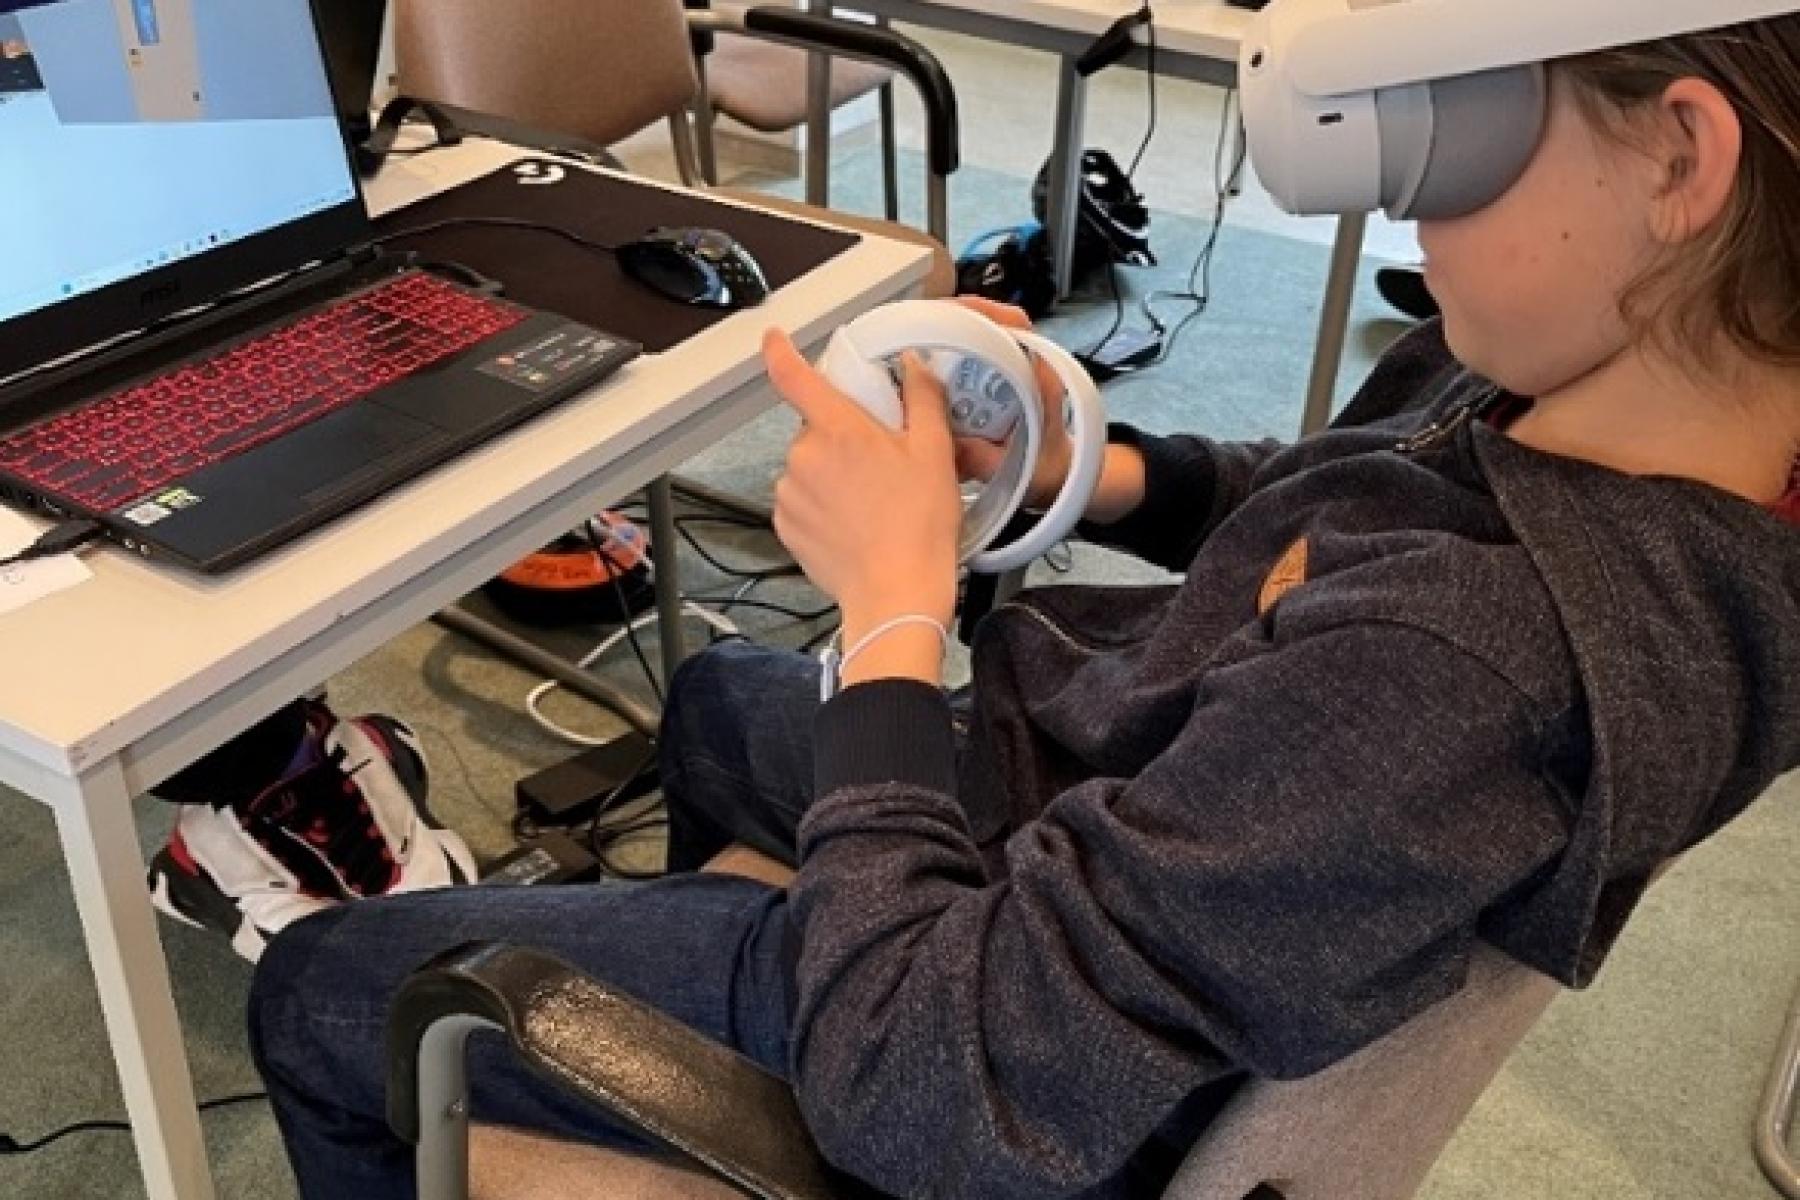 Kind sitzt mit VR-Brille vor einem Laptop.